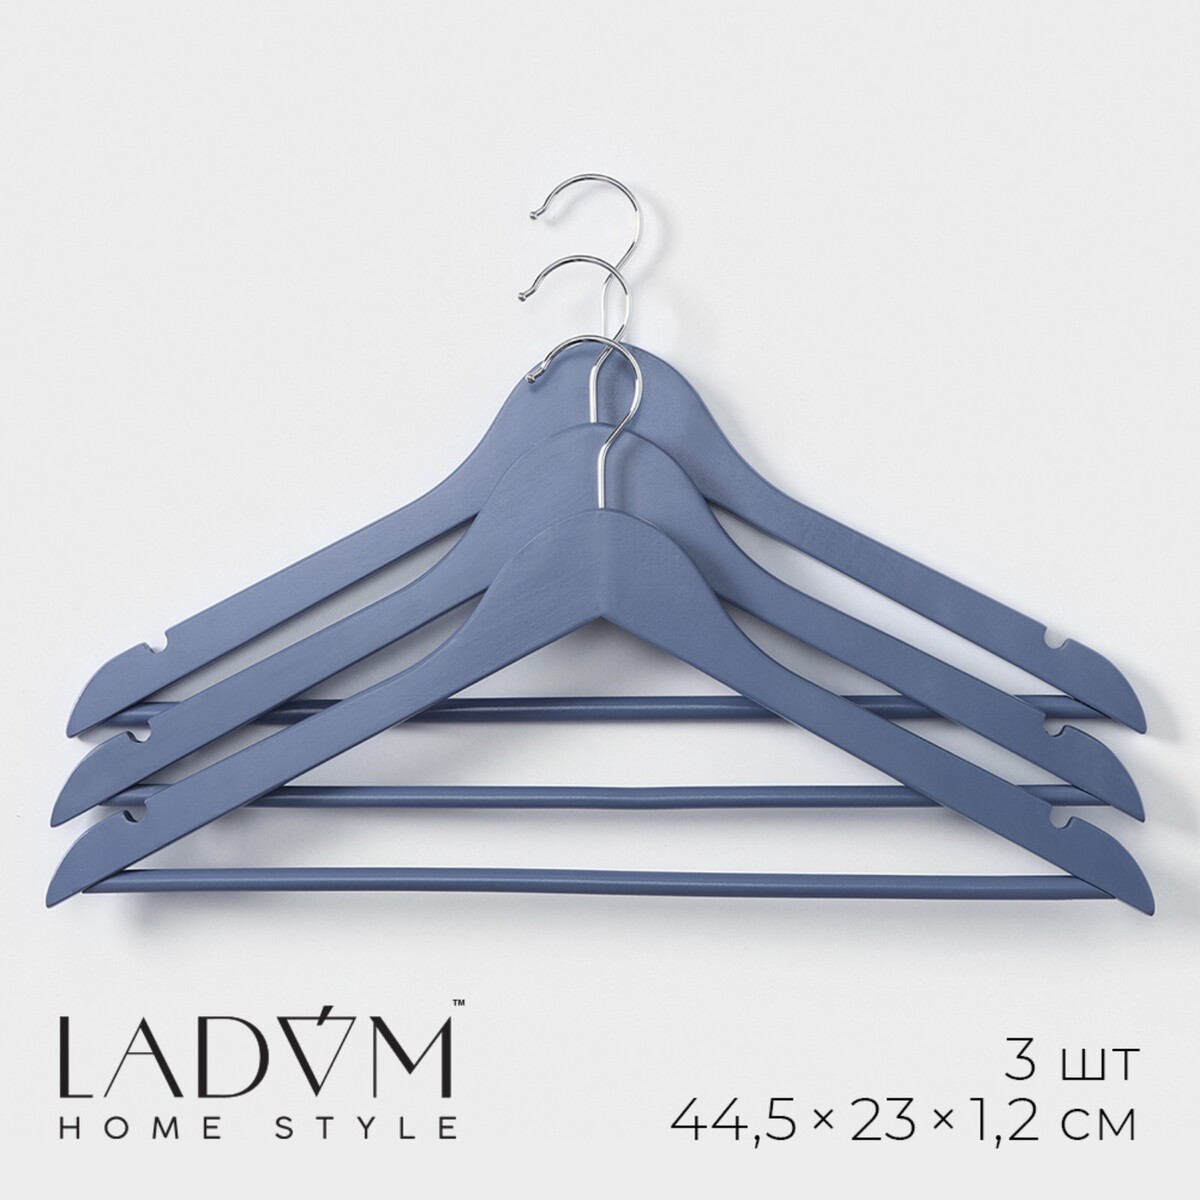 Плечики - вешалки для одежды деревянные ladо́m brillant, 44,5×23×1,2 см, 3 шт, цвет синий